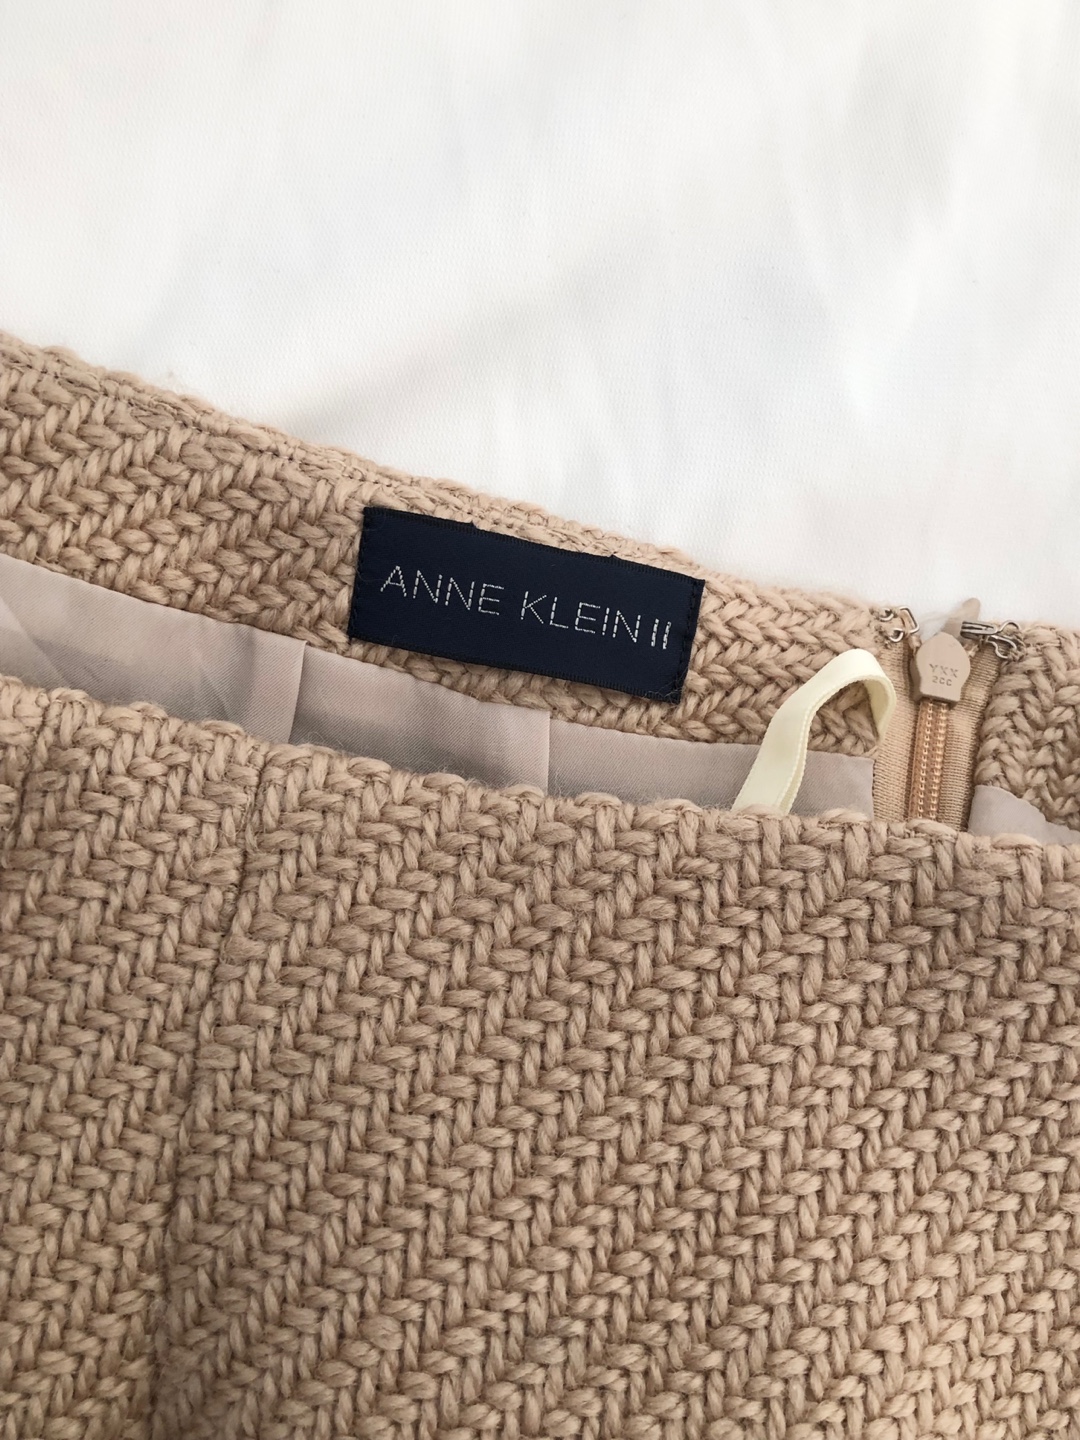 Anne Klein beige ash brown wool tweed skirt [26 inch]